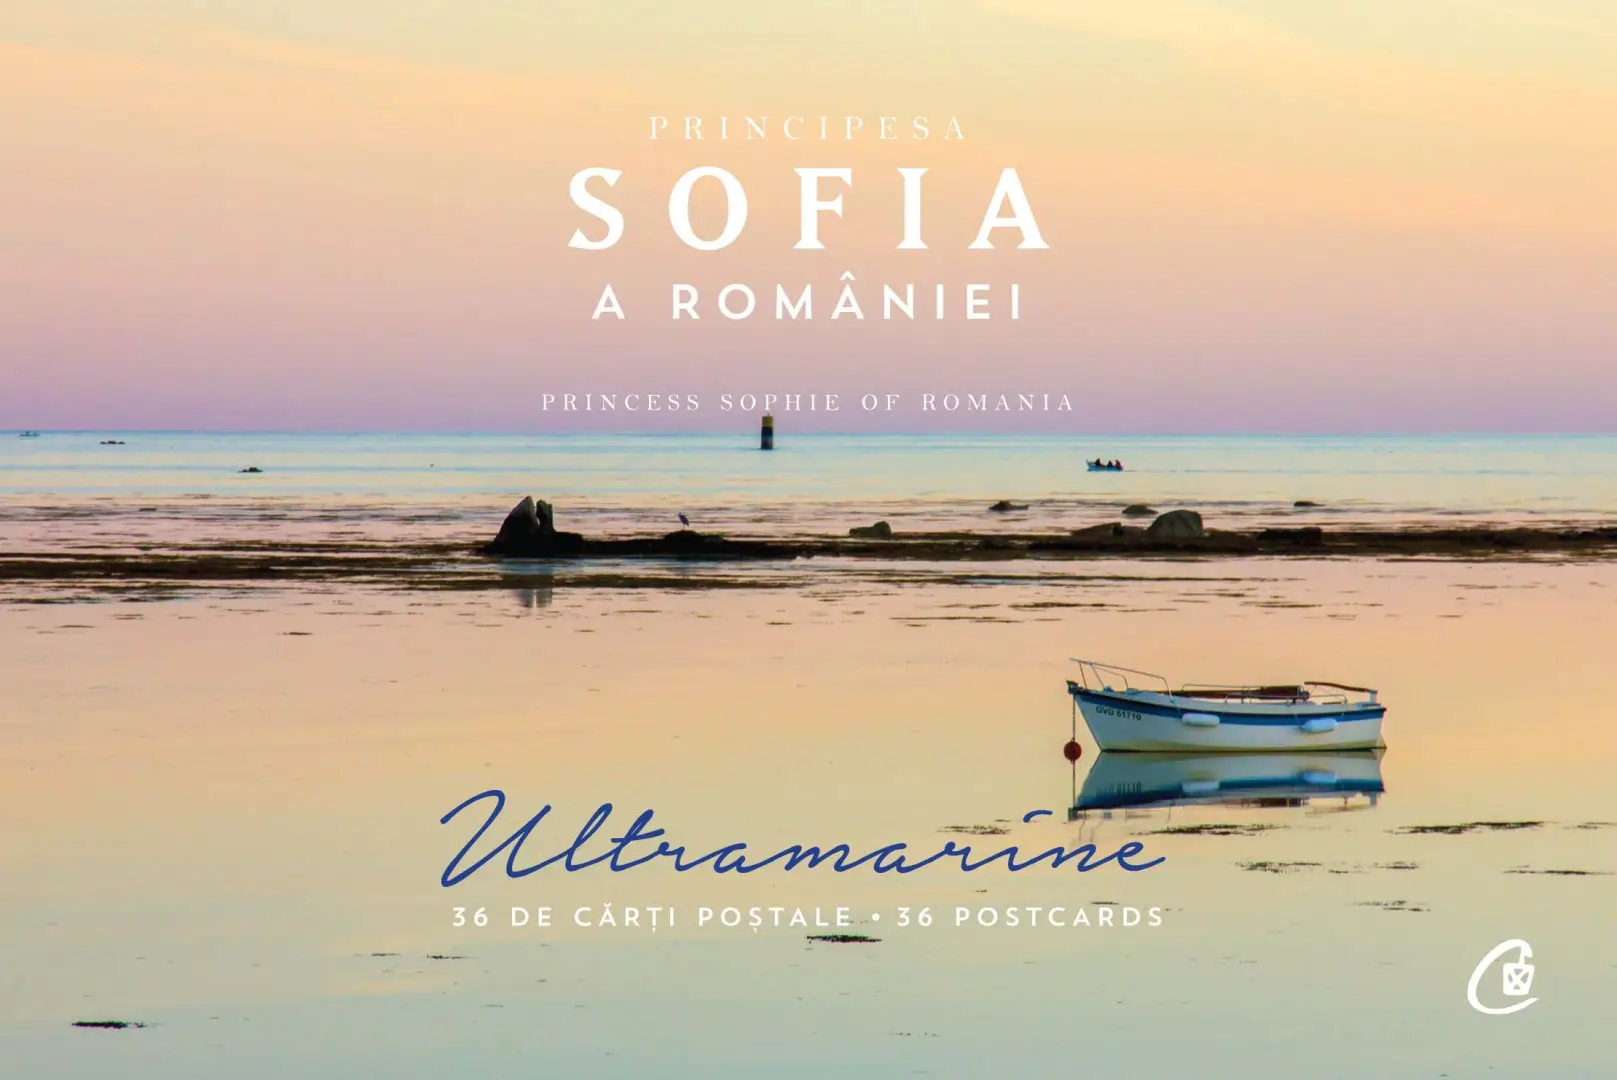  Principesa Sofia a Romaniei - Ultramarine, 36 carti postale |  